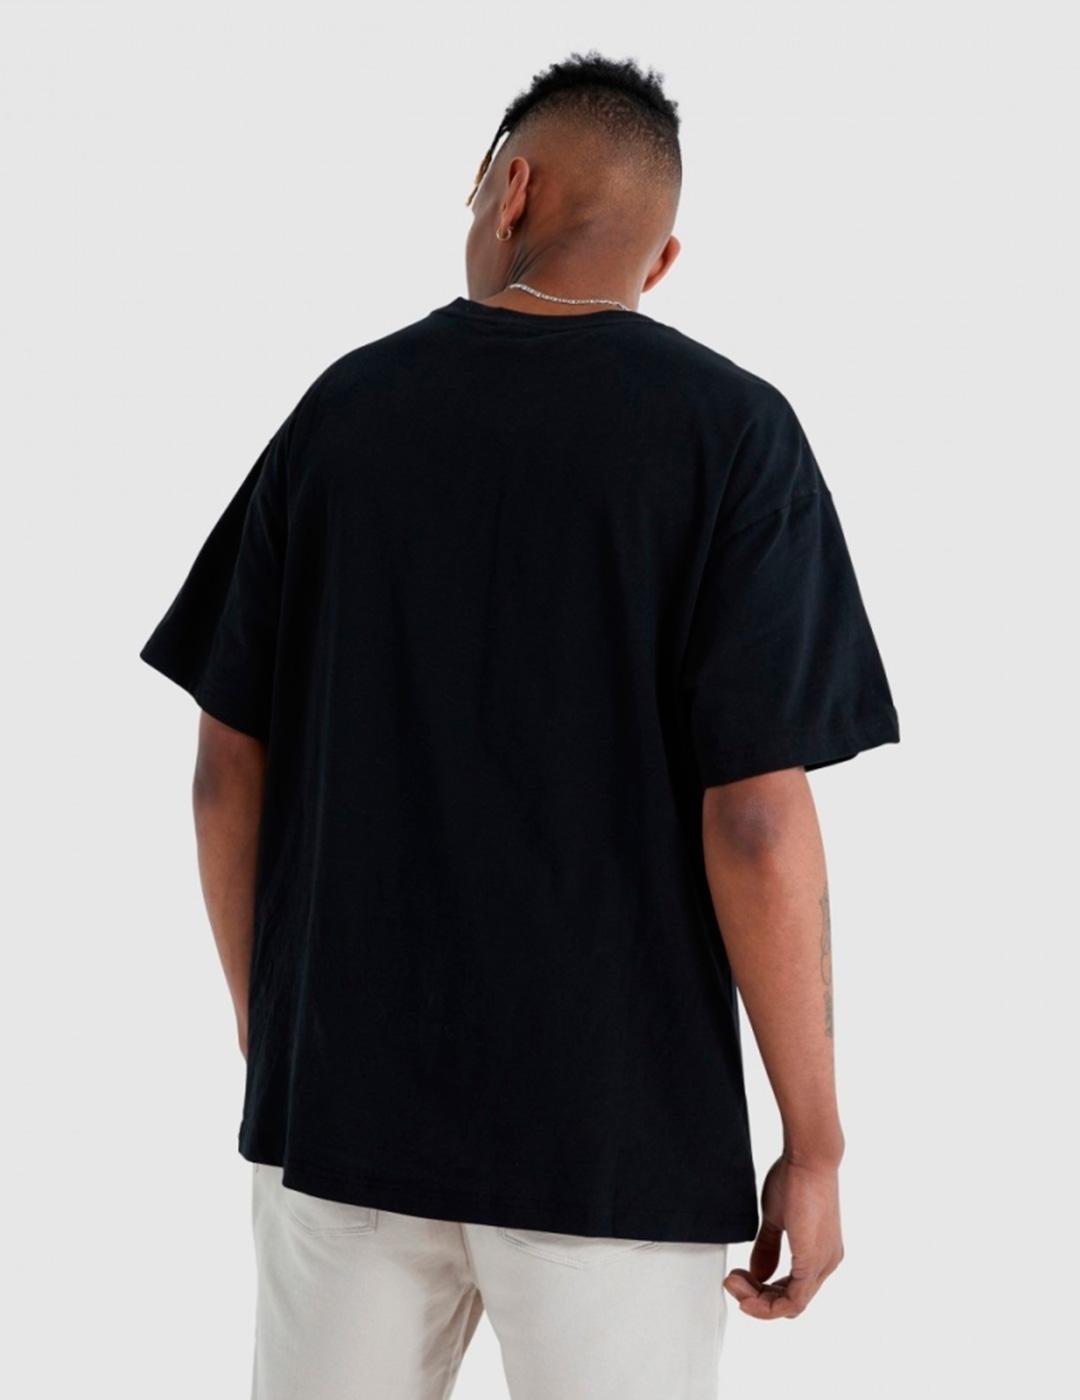 Camiseta Ellesse 'Mabor' Negro